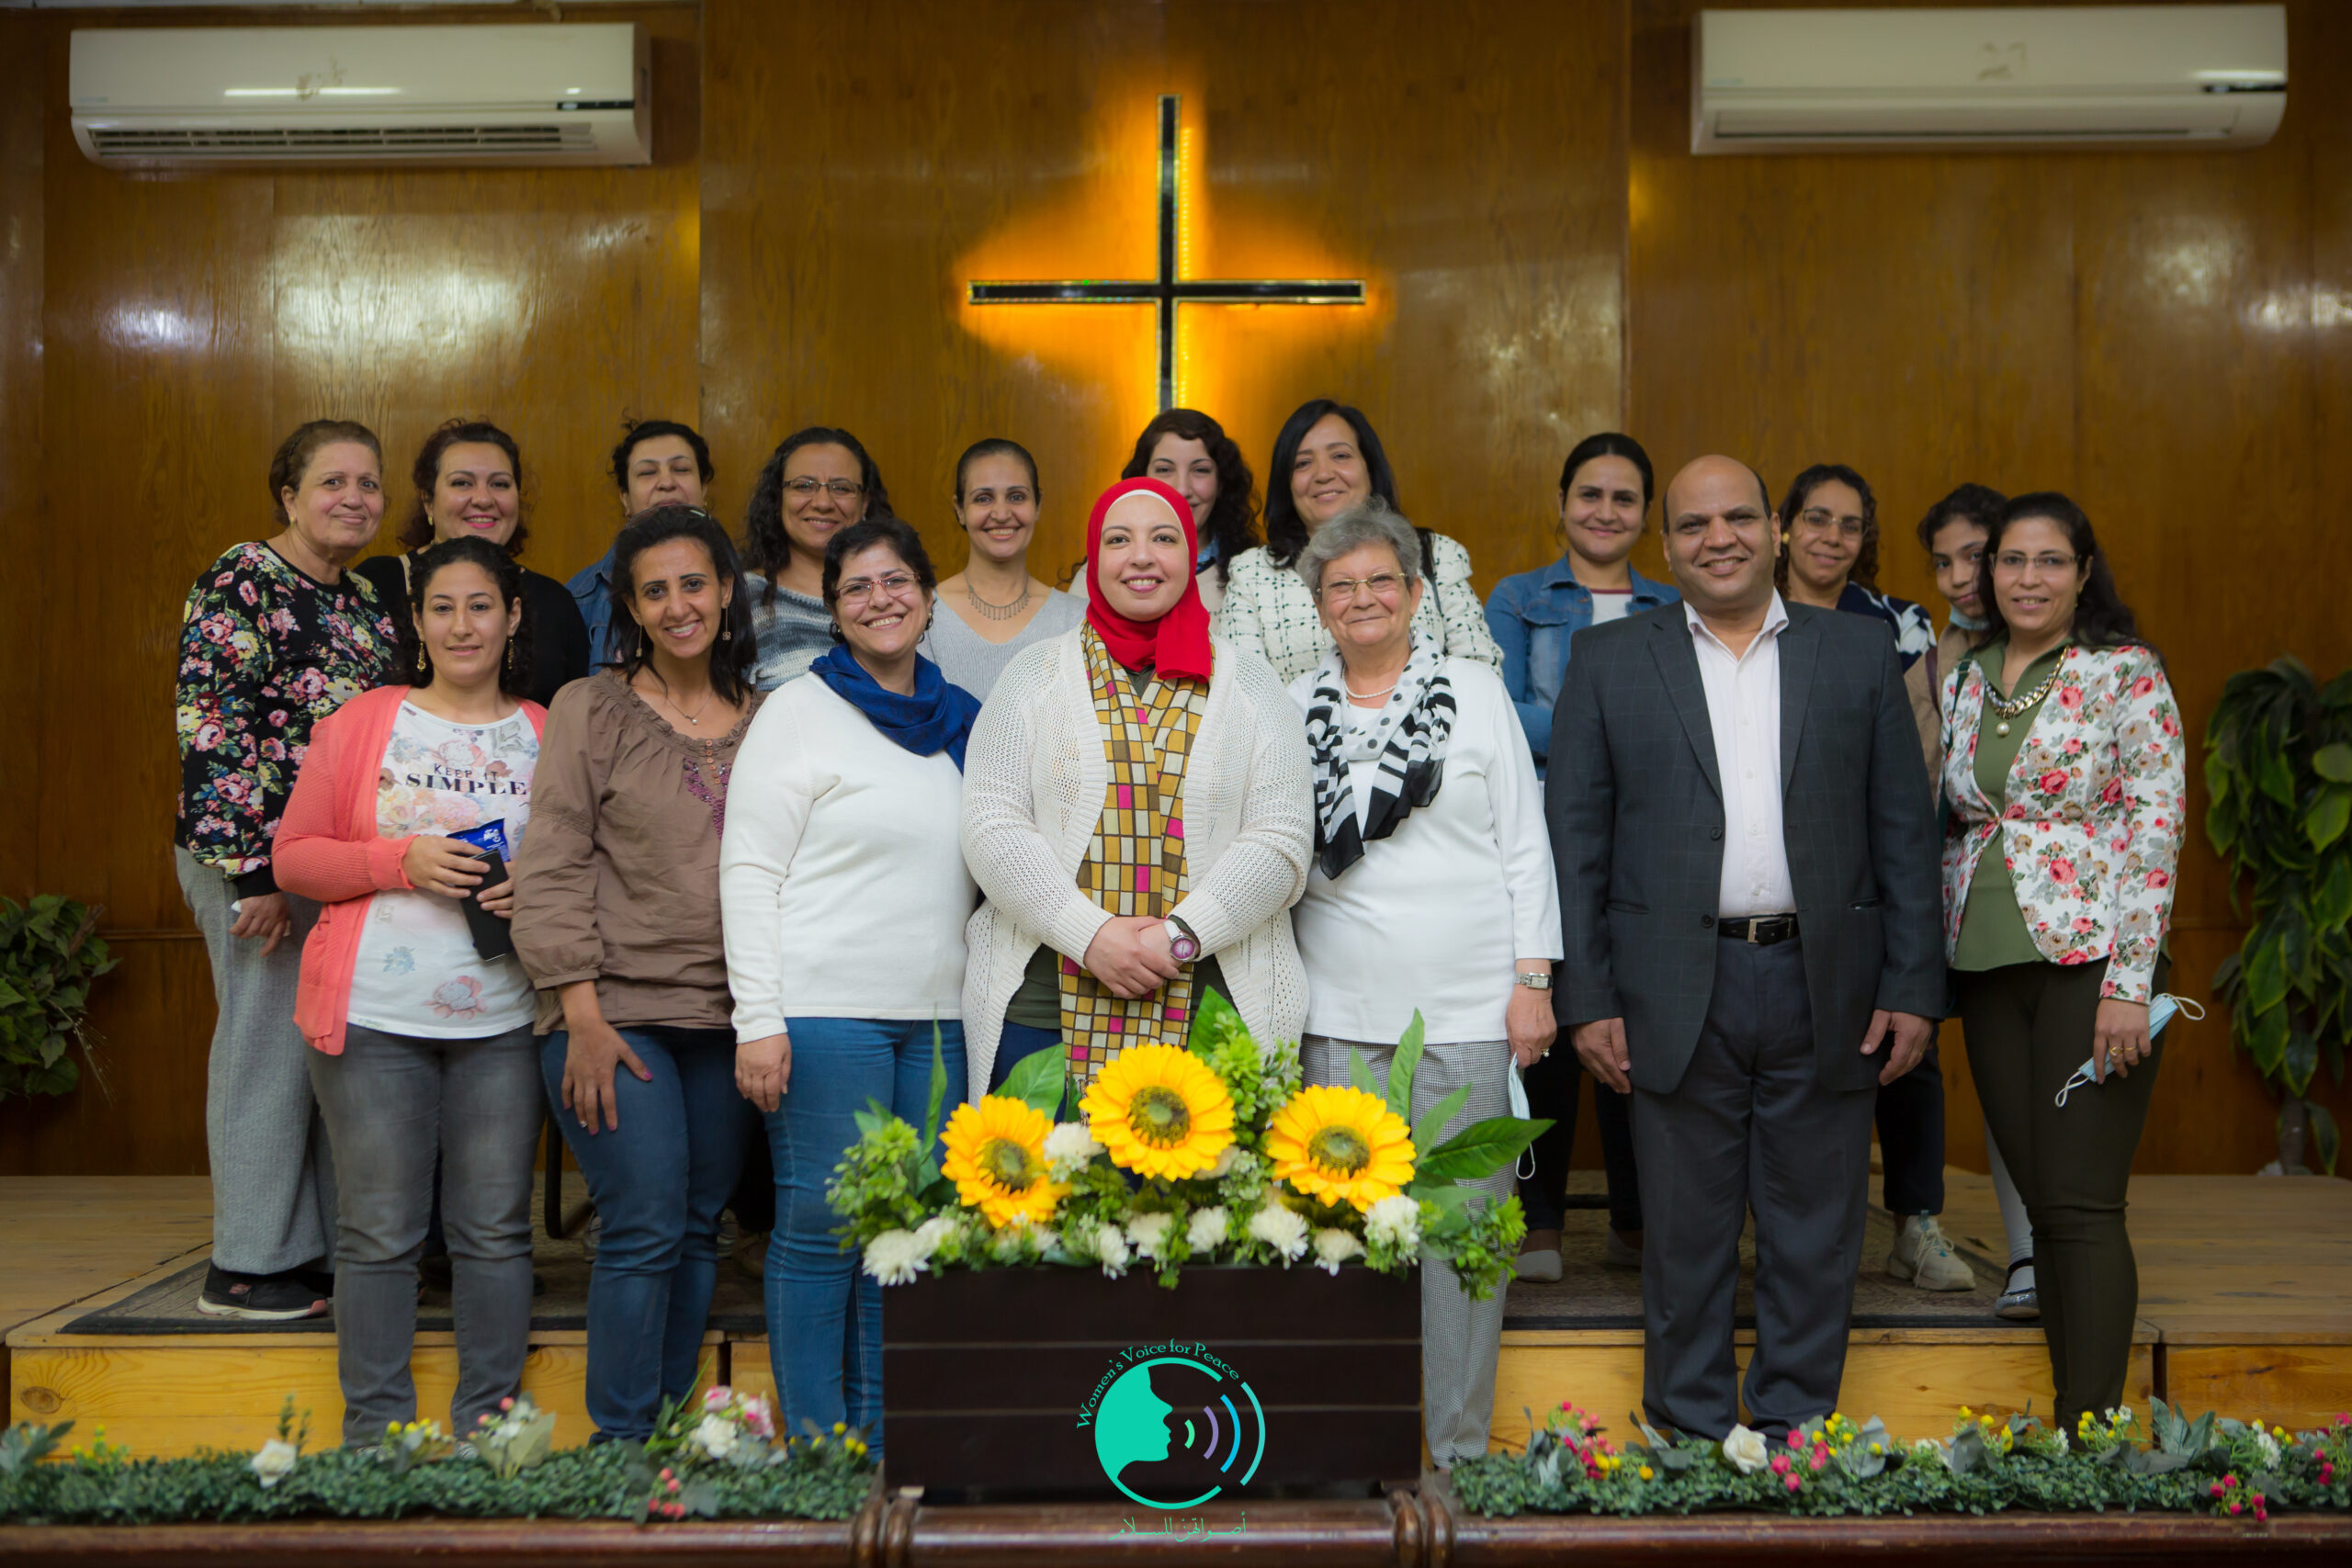 خادمات الكنيسة الانجيلية بالقاهرة بورشة عمل مبارة أصواتهن للسلام